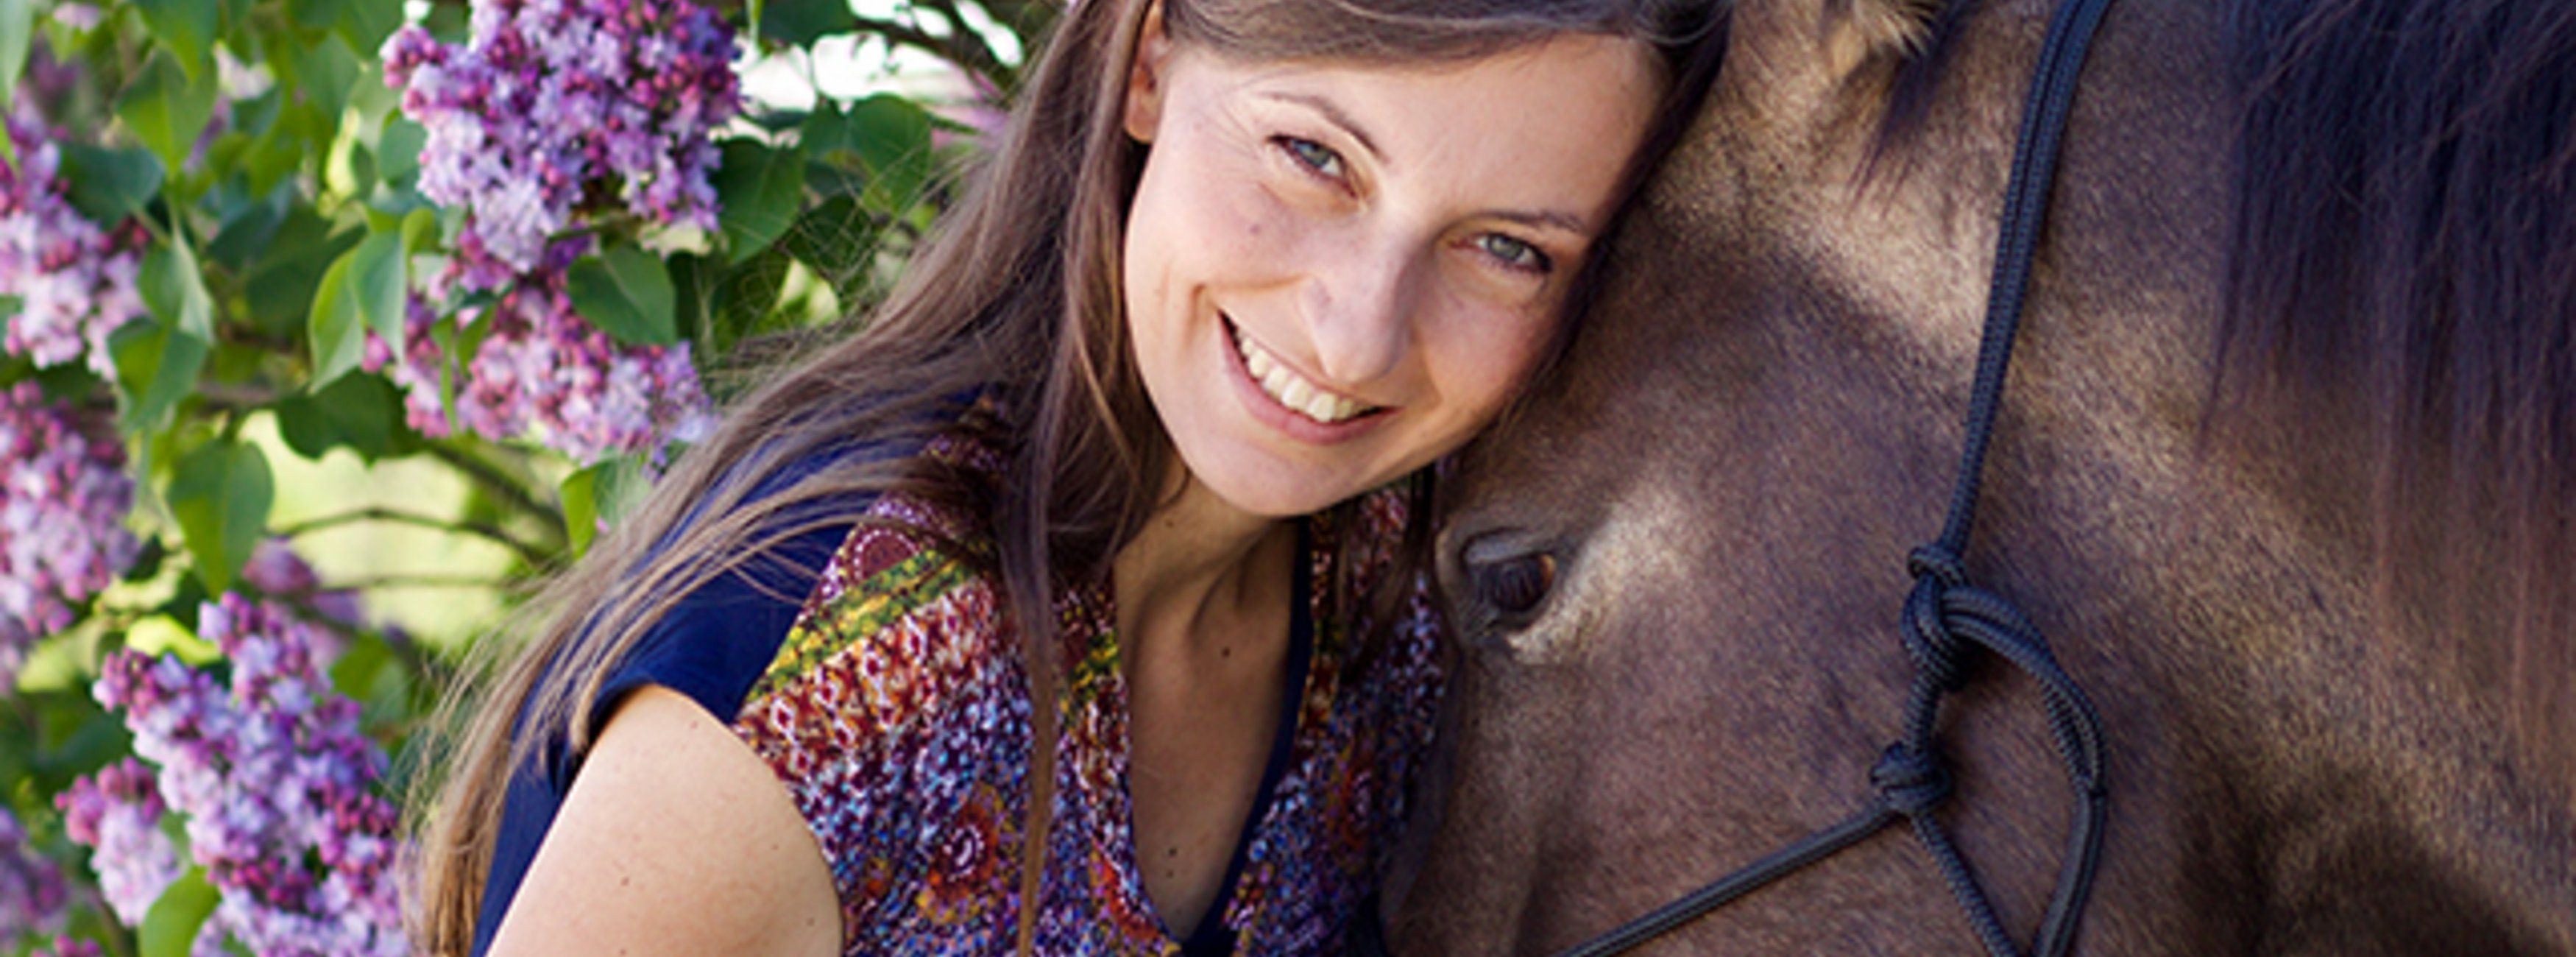 Elena Bader Parelli Instruktorin steht neben ihrem Pferd